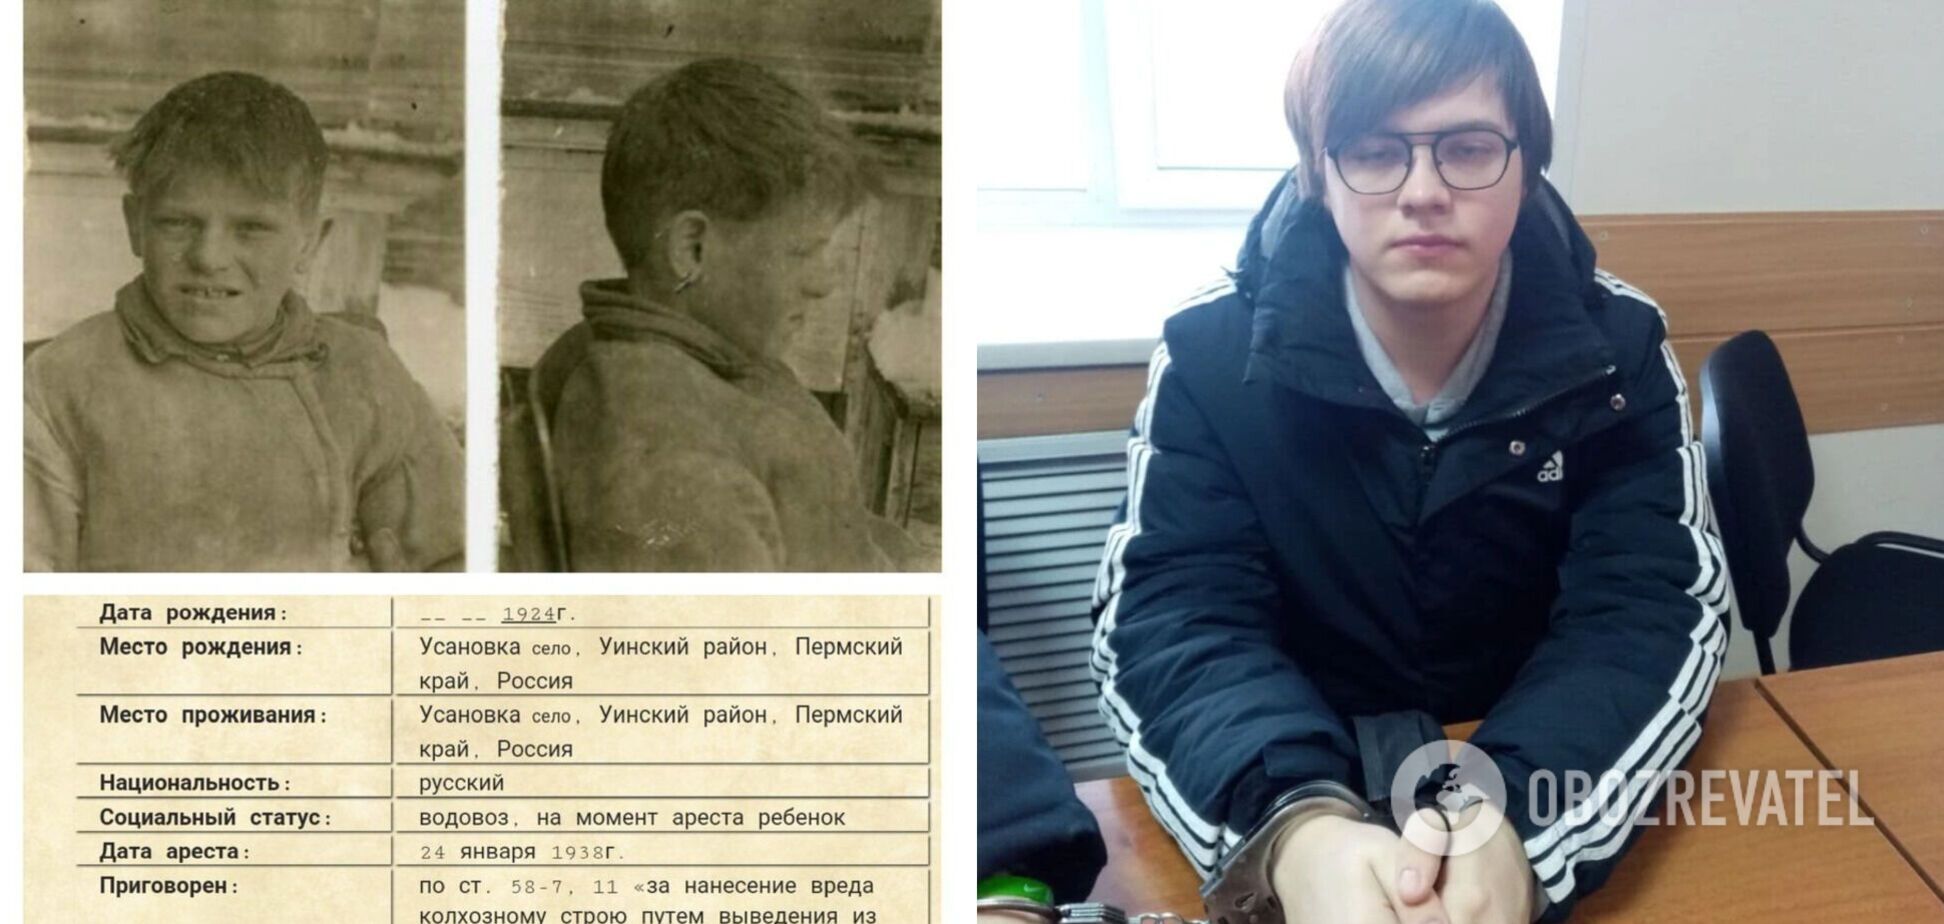 Уваров Никита, 16 лет, 2022 г. Играл в 'Майнкрафт', в игре взрывал здание ФСБ